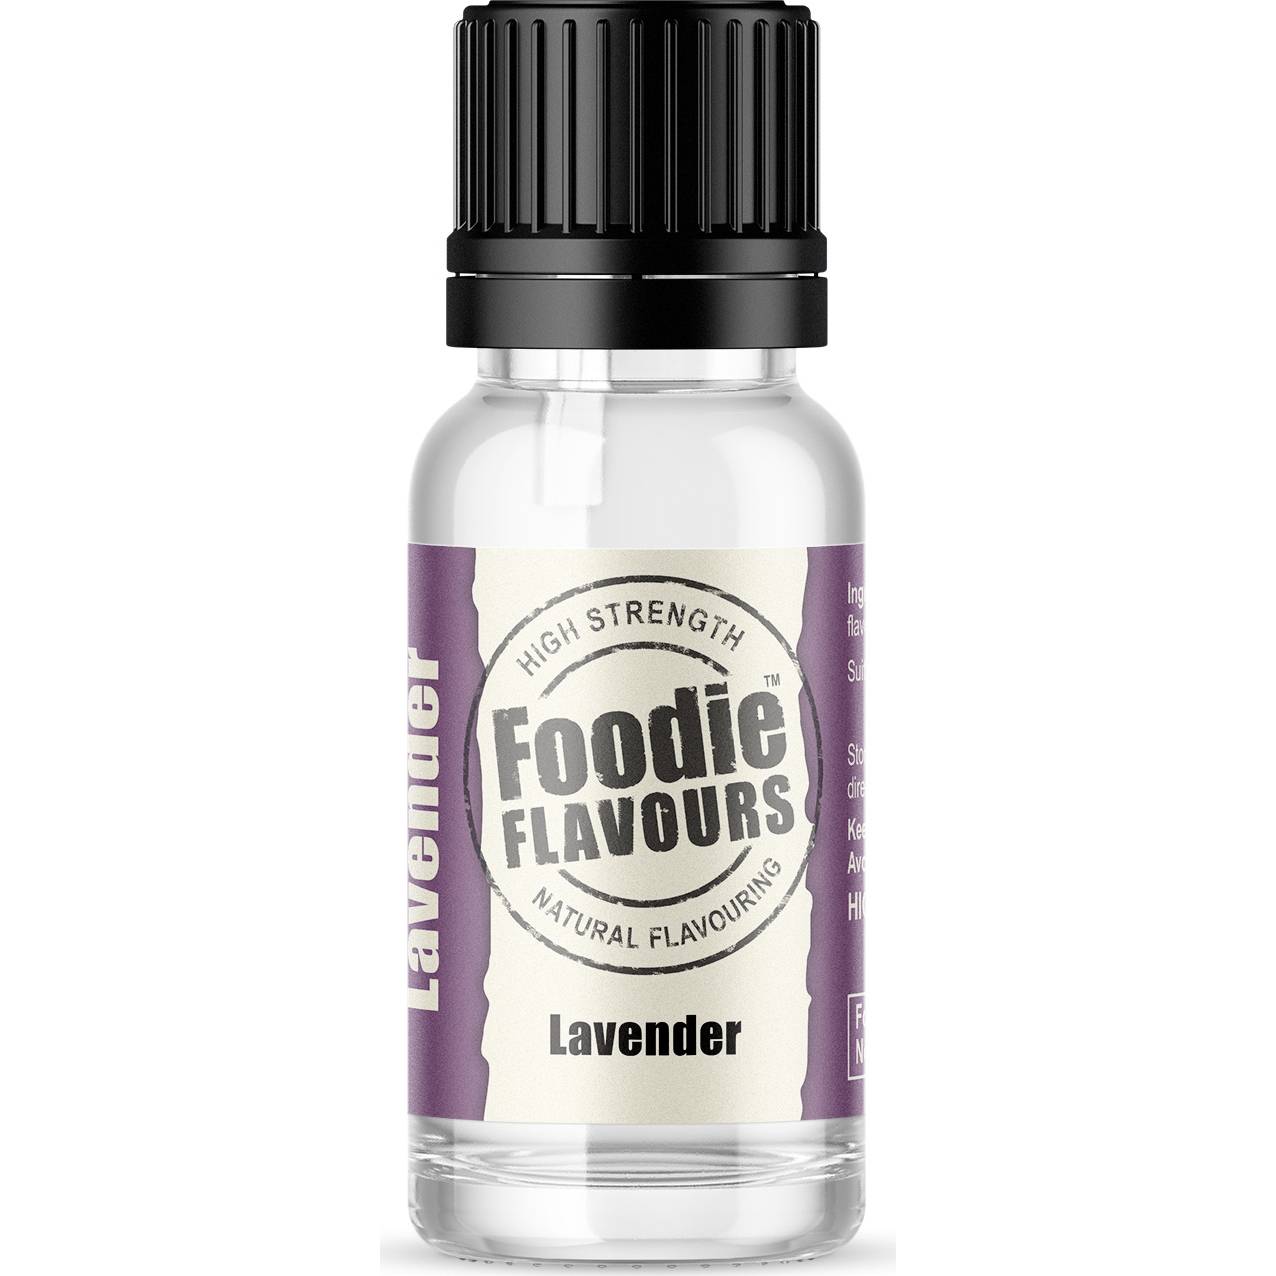 Přírodní koncentrované aroma 15ml levandule - Foodie Flavours